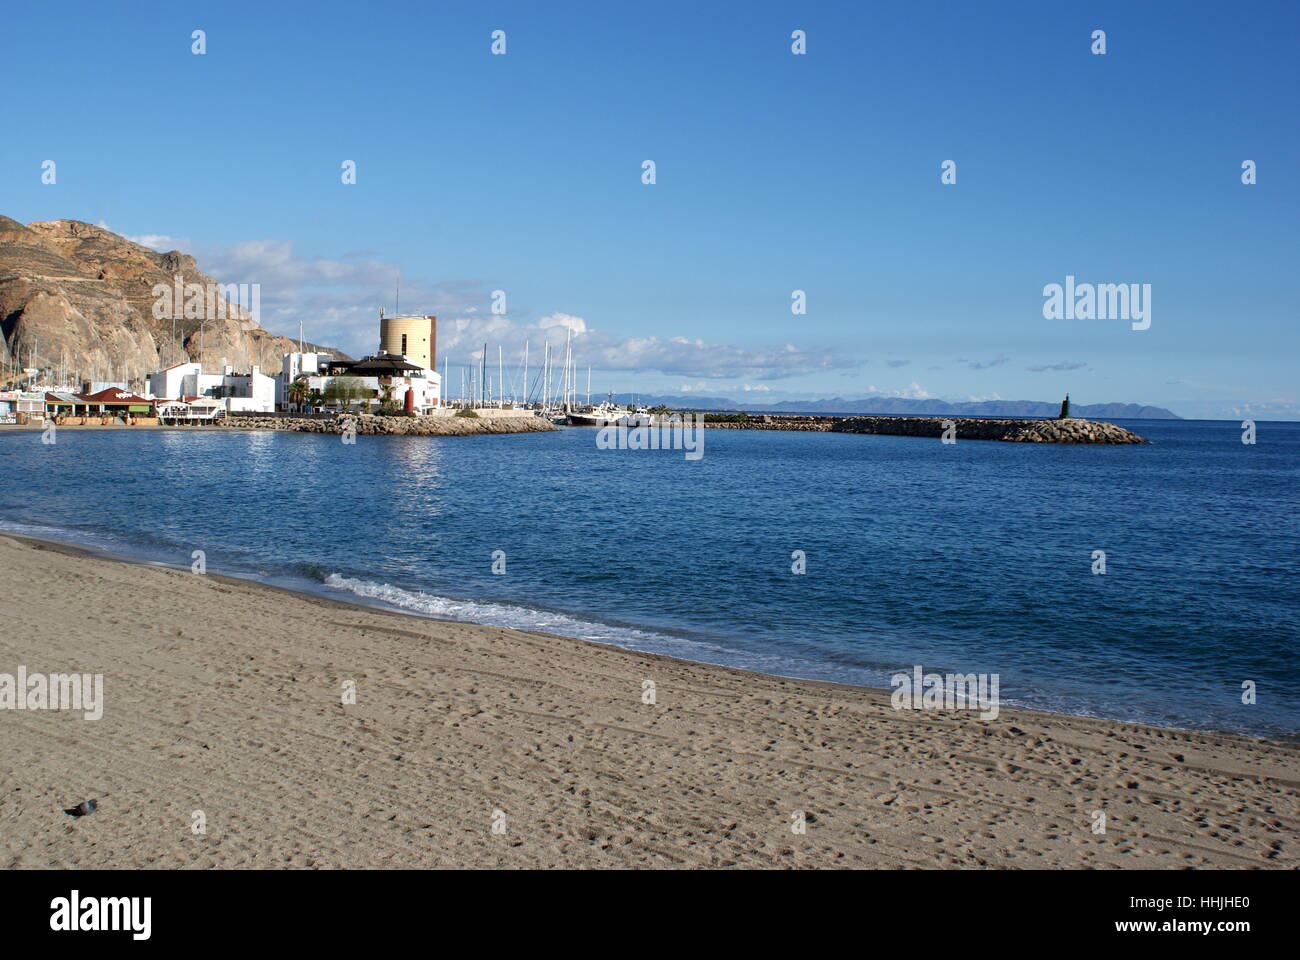 Aguadulce beach and marina, Almeria province, Andalusia, Spain Stock Photo